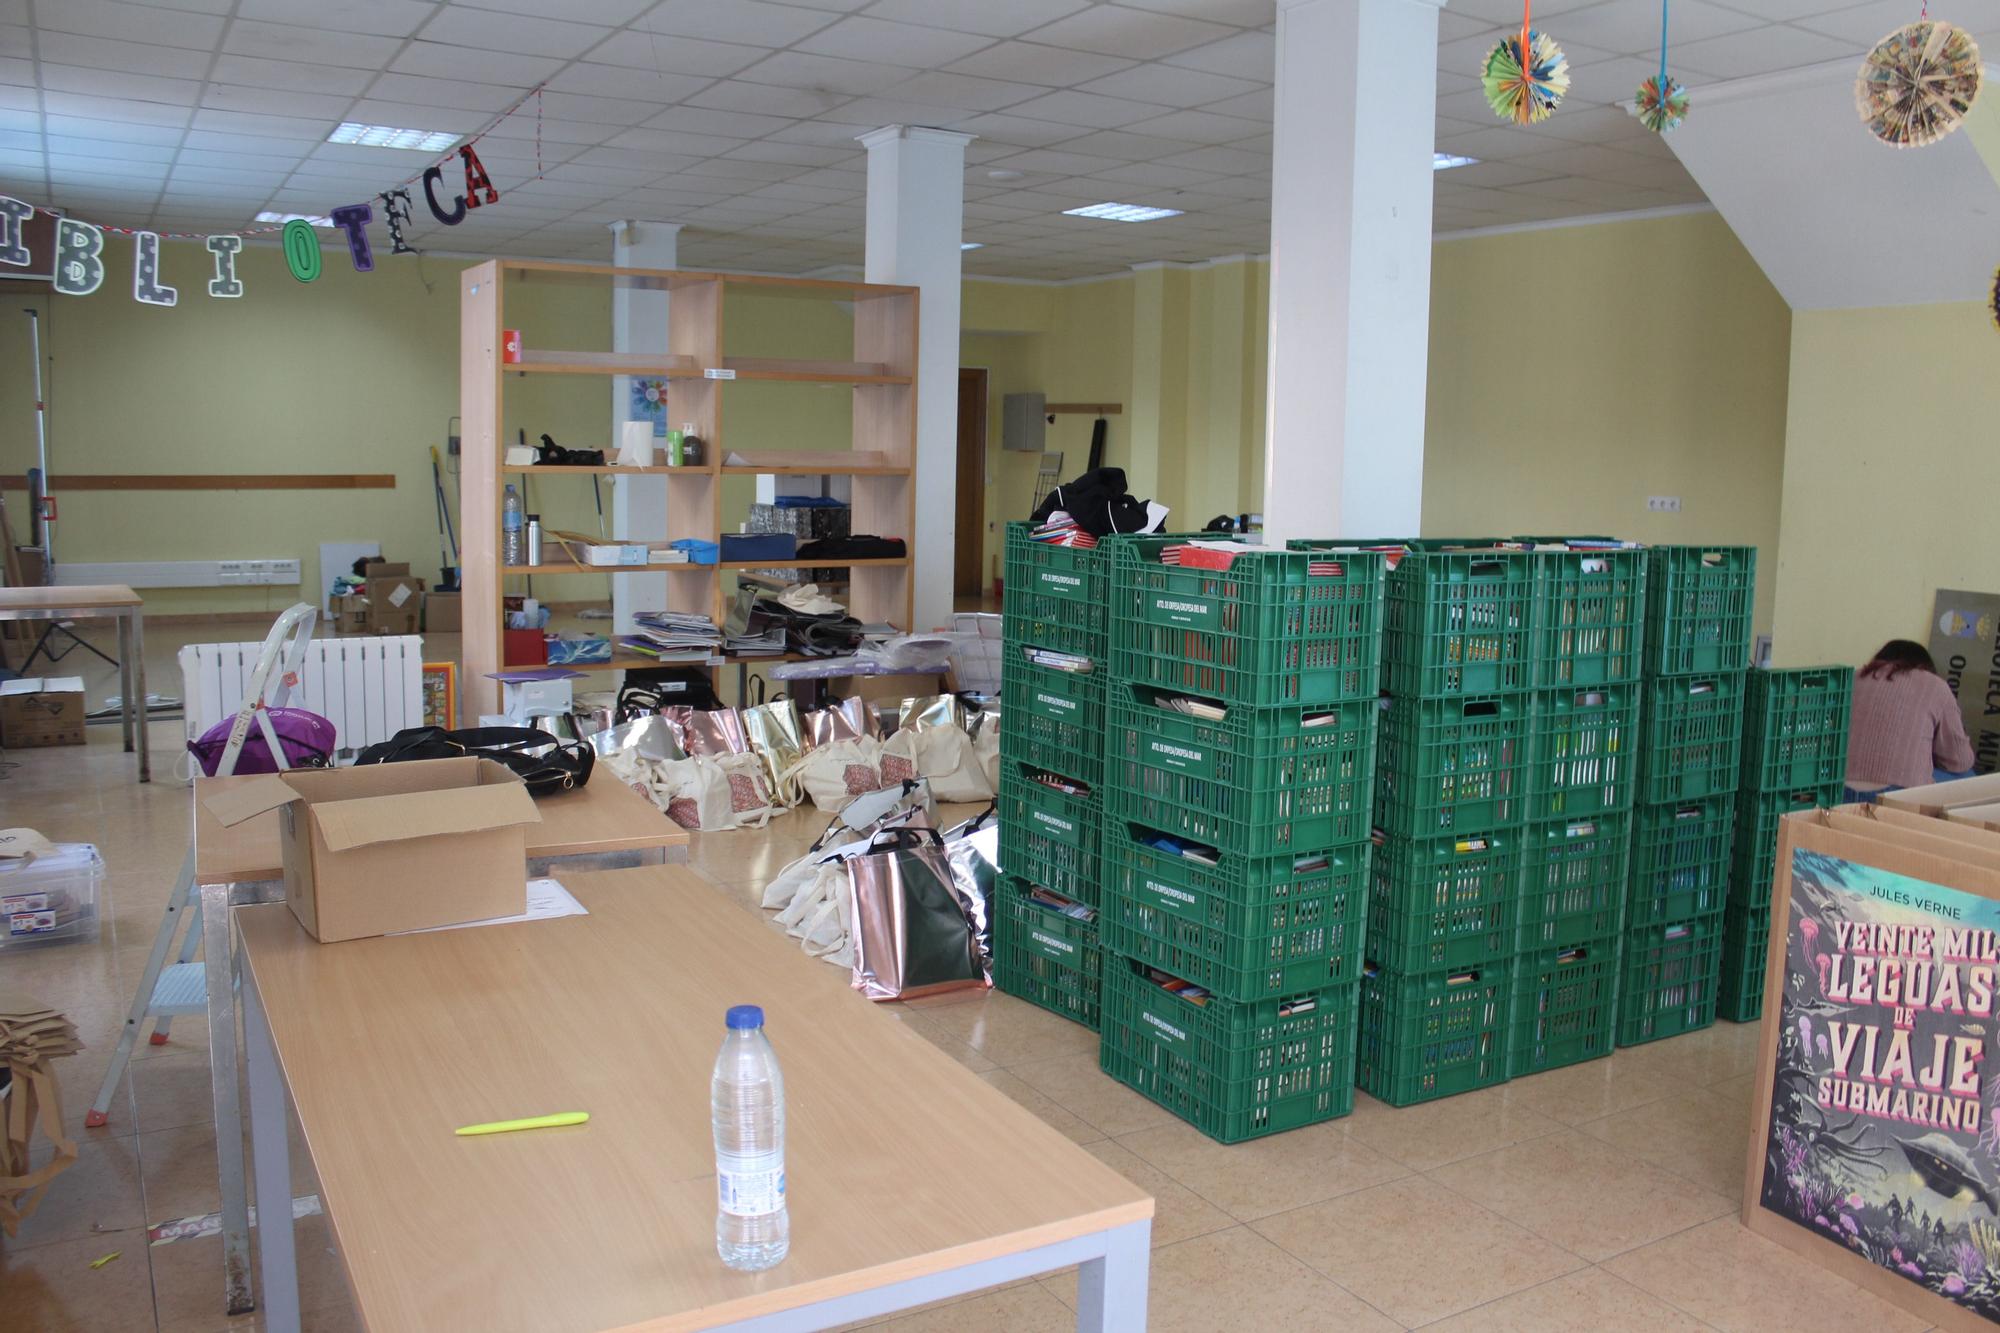 Cadena humana en Orpesa para trasladar libros a la nueva biblioteca